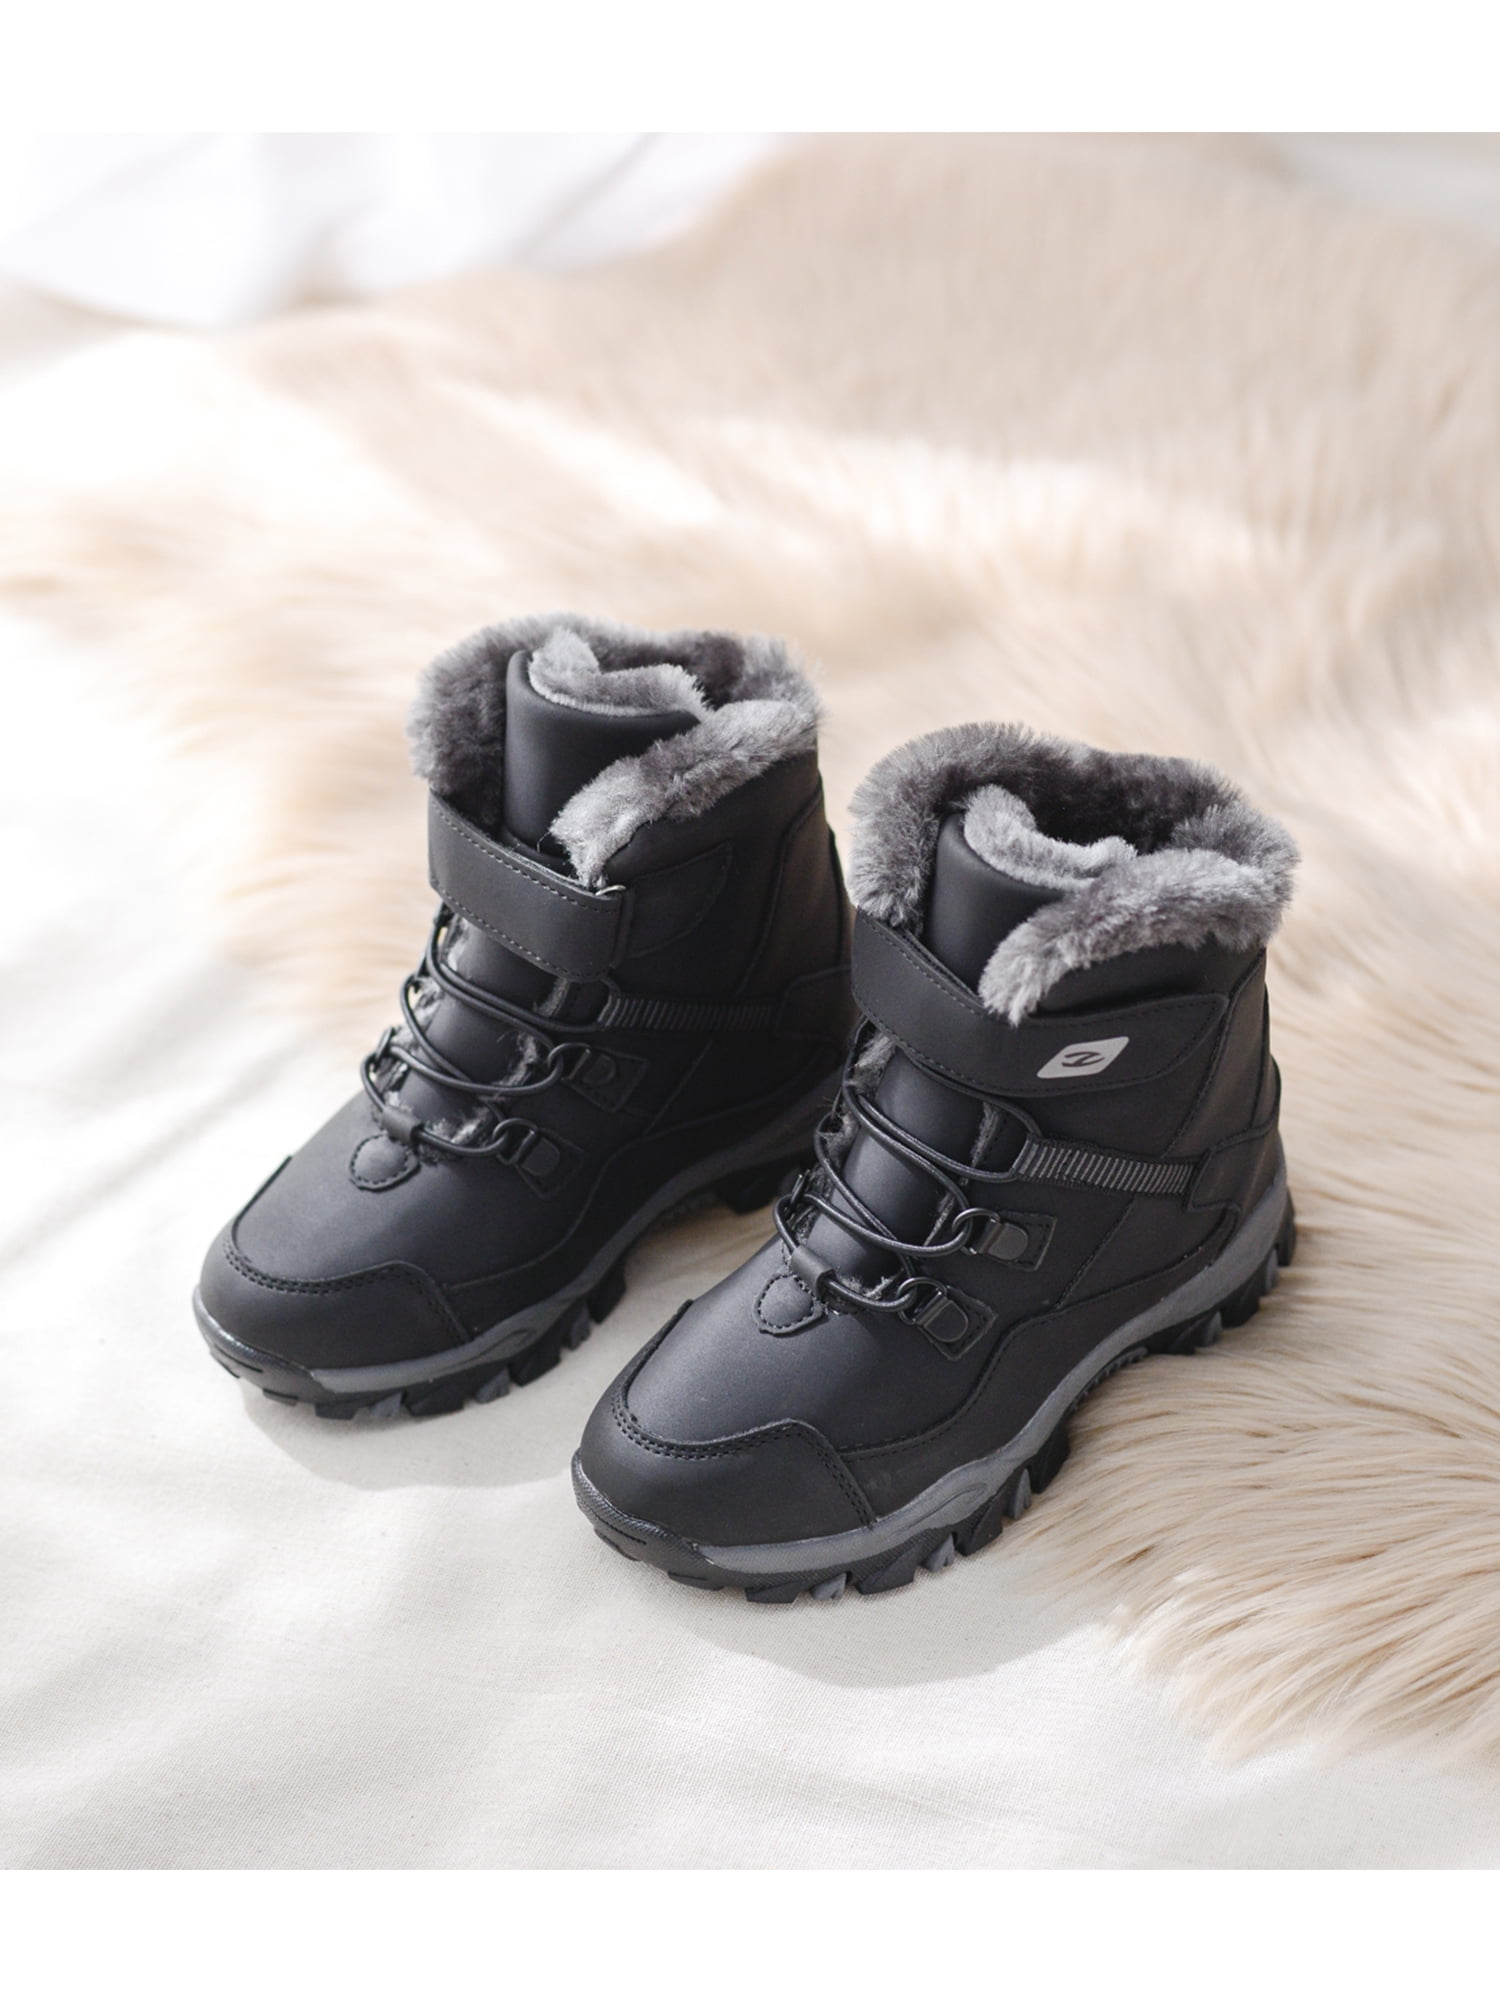 Boys Waterproof Snow Boots Faux Fur 